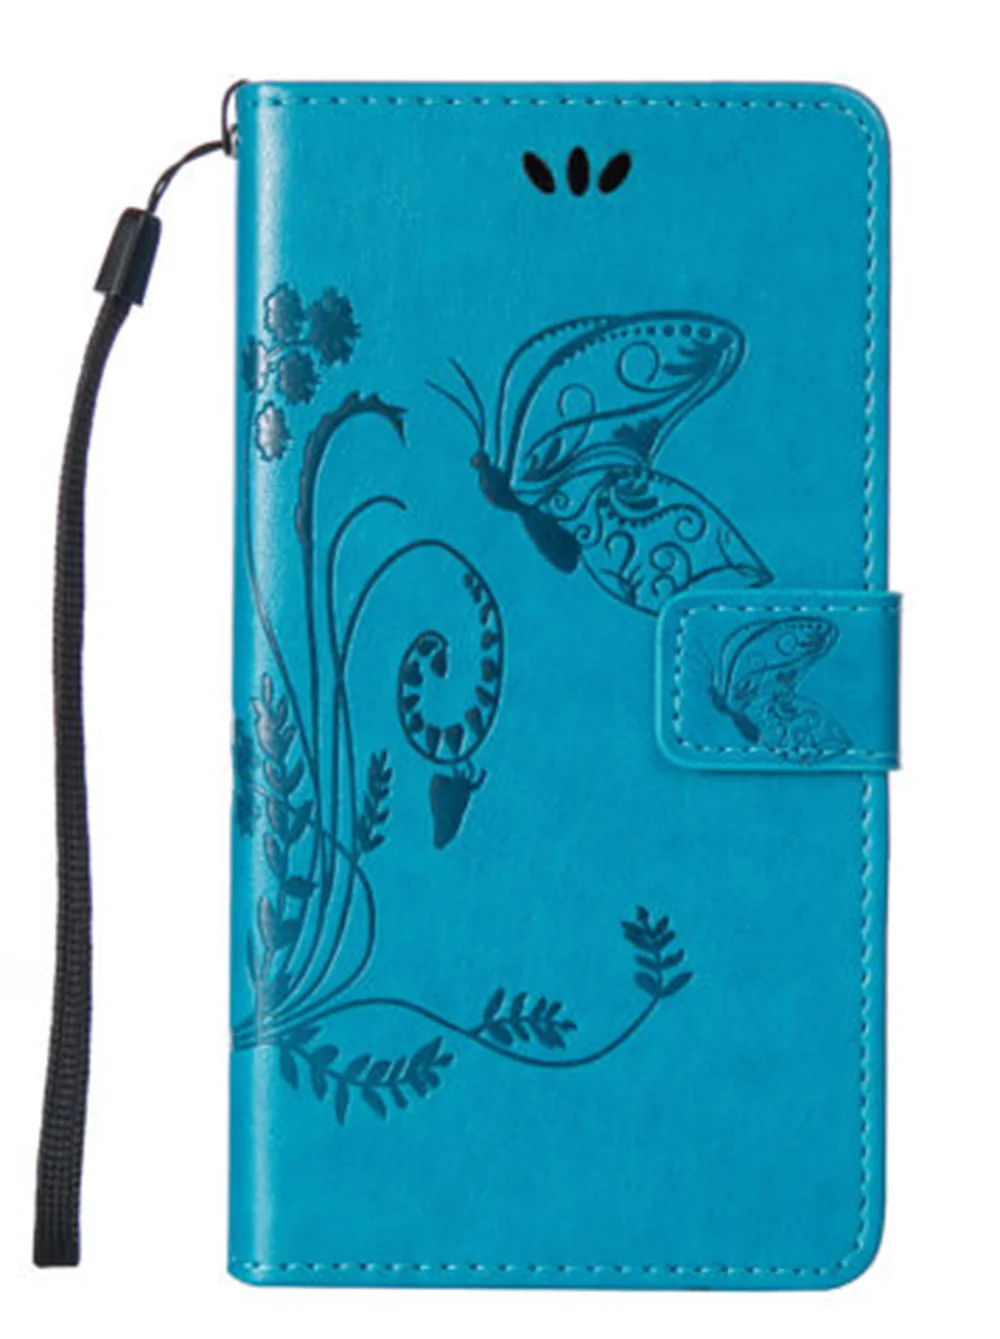 Уникальный и чехол-кошелек для Meizu 15 Lite 16 C9, высокое качество, кожаный защитный чехол-книжка для мобильного телефона - Цвет: Blue